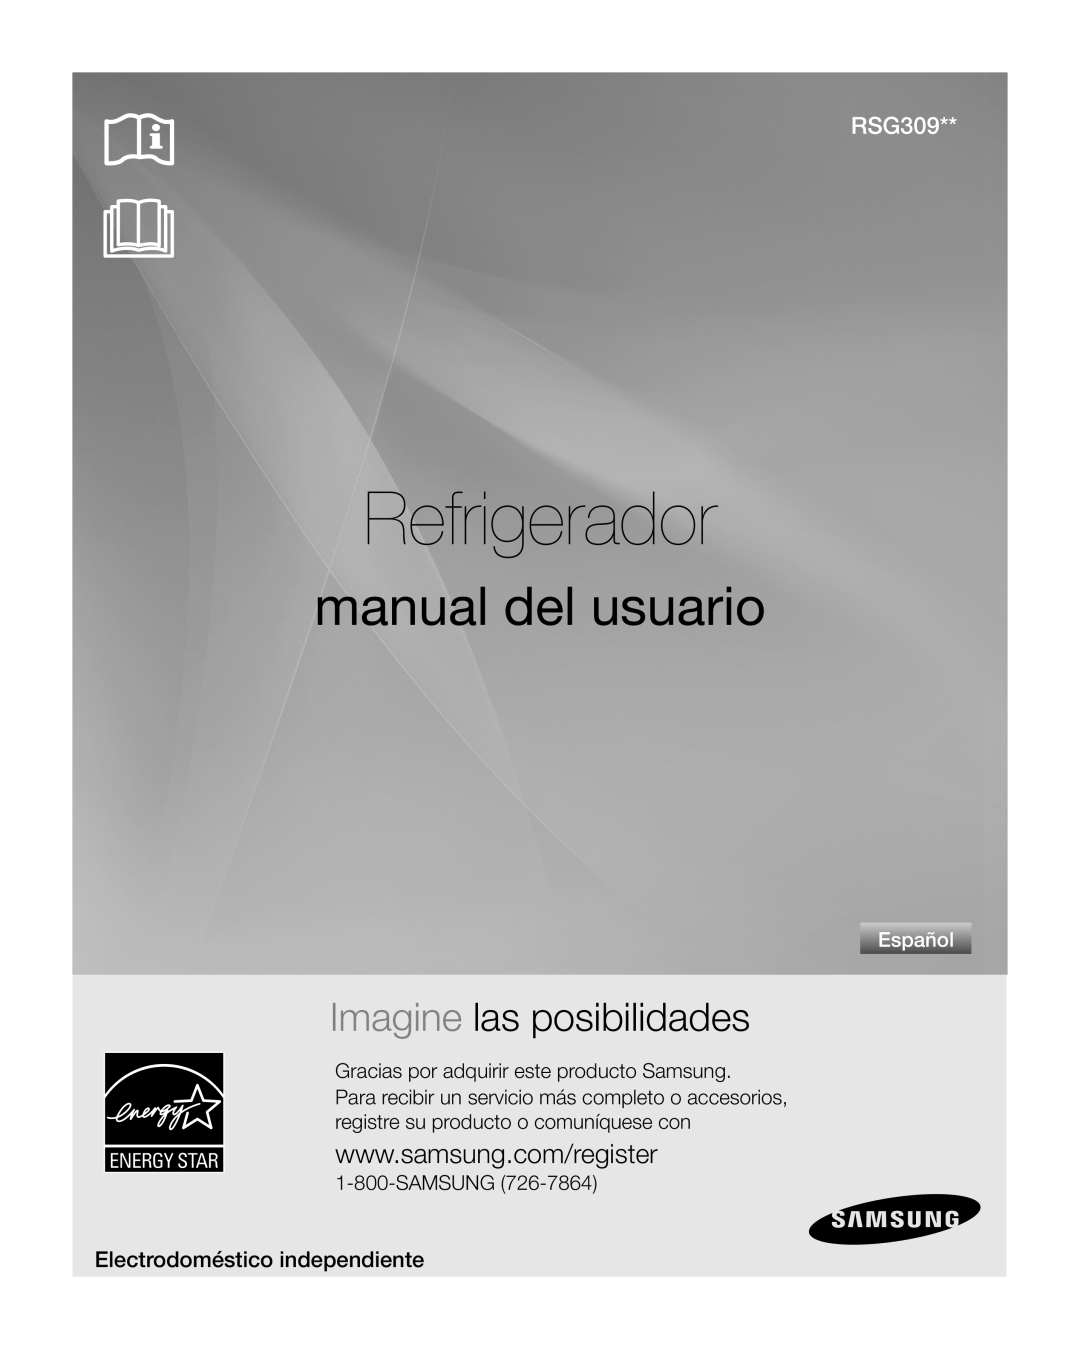 Samsung RSG309** Refrigerador, manual del usuario, Imagine las posibilidades, Electrodoméstico independiente, Español 